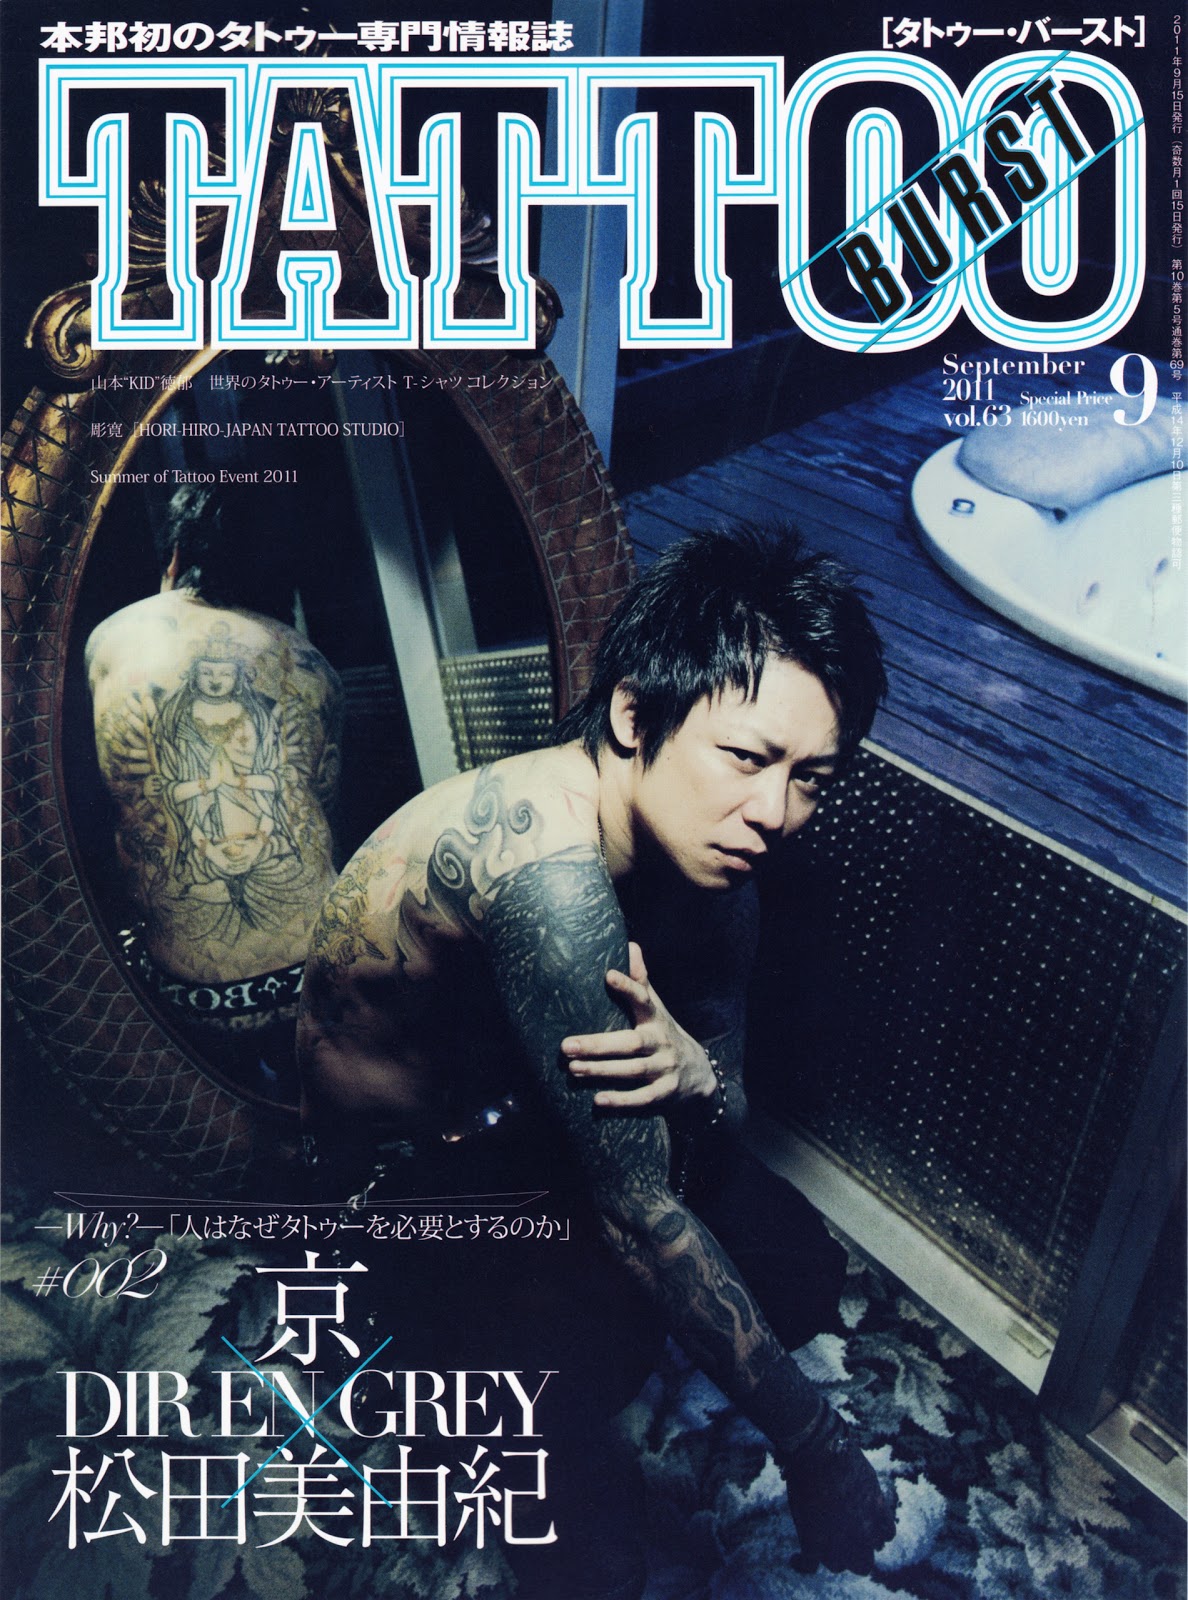 Kakin Lee Tattoo Burst Vol 63 Sep 11 京的專訪